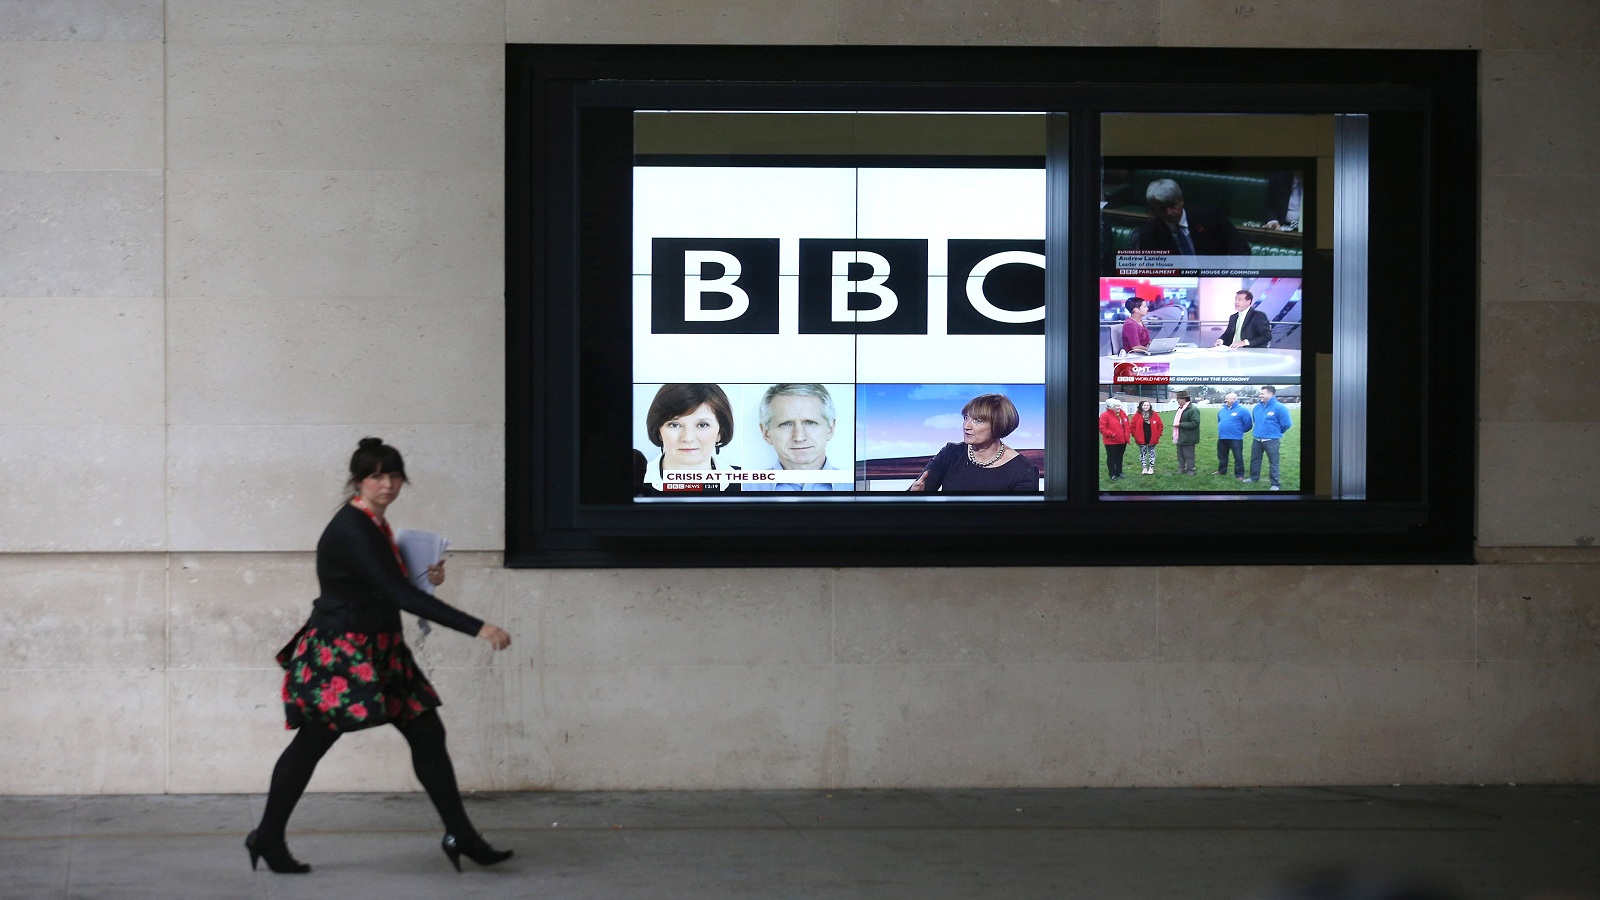 "بي بي سي" تفقد جمهورها الشاب لصالح "نيتفليكس"